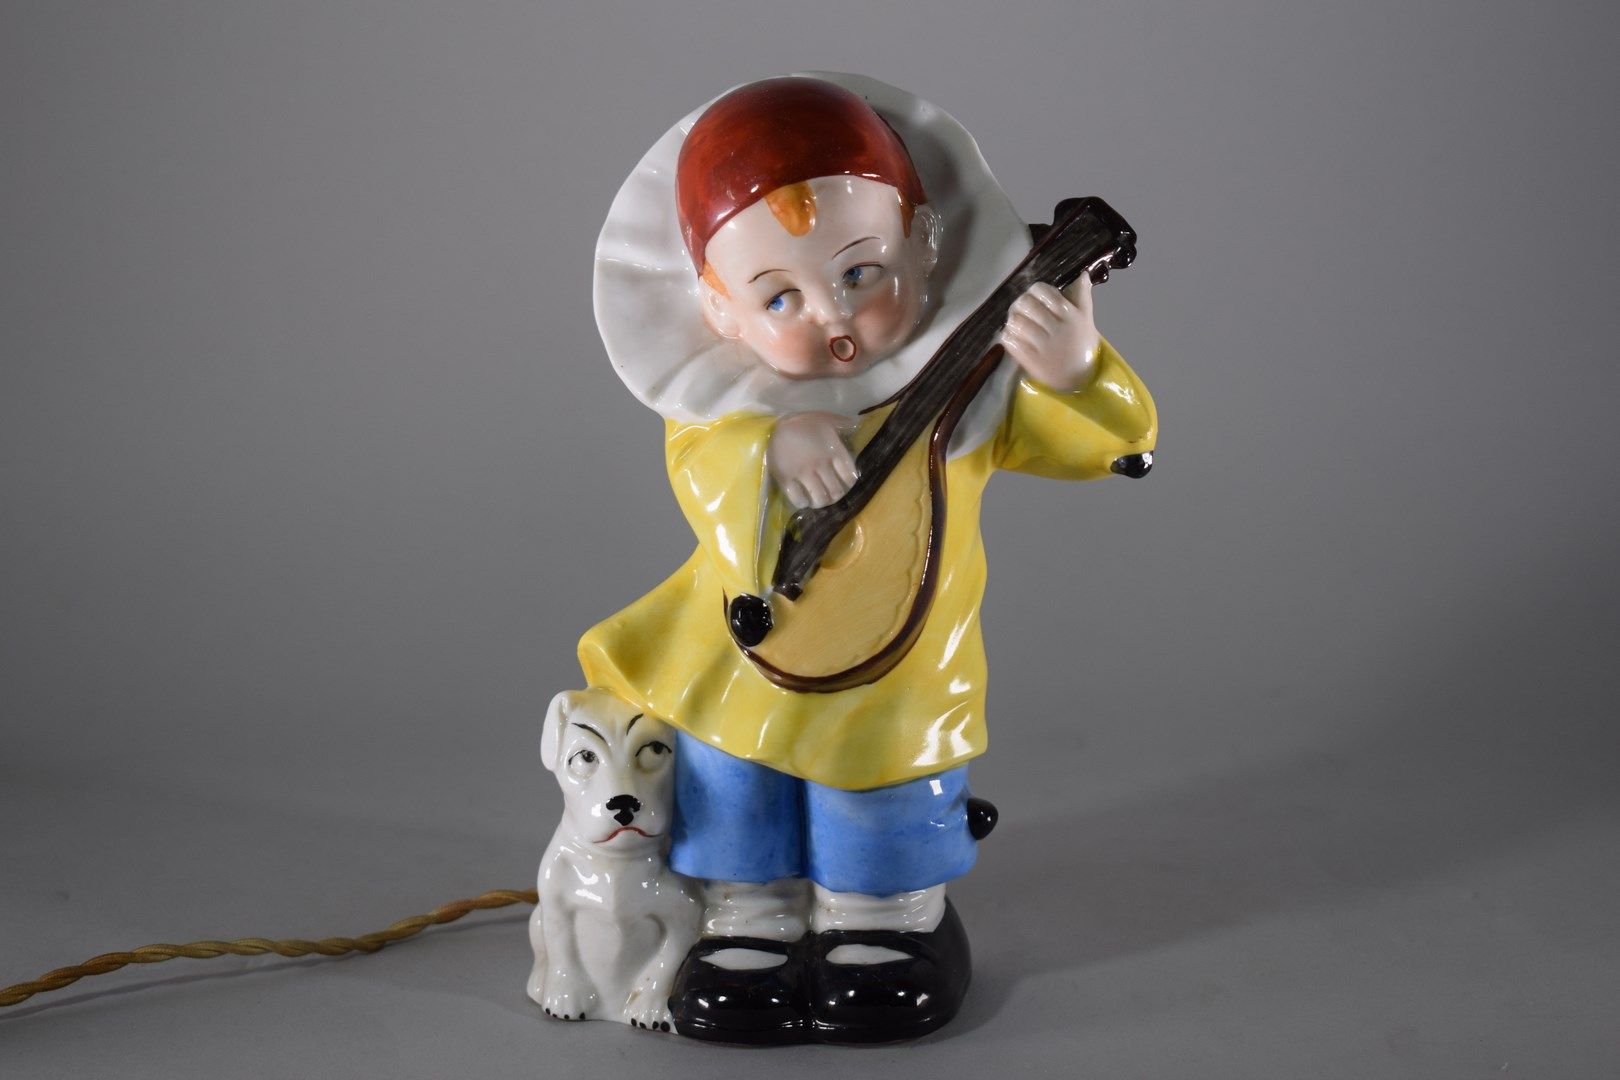 Null 多彩瓷器夜灯的主角是一个装扮成皮耶罗的孩子，正在弹奏吉他，他的脚下是一只狗。德国作品，约1930年。时代电气化，电木元件（不保证）。

高度：20厘米&hellip;